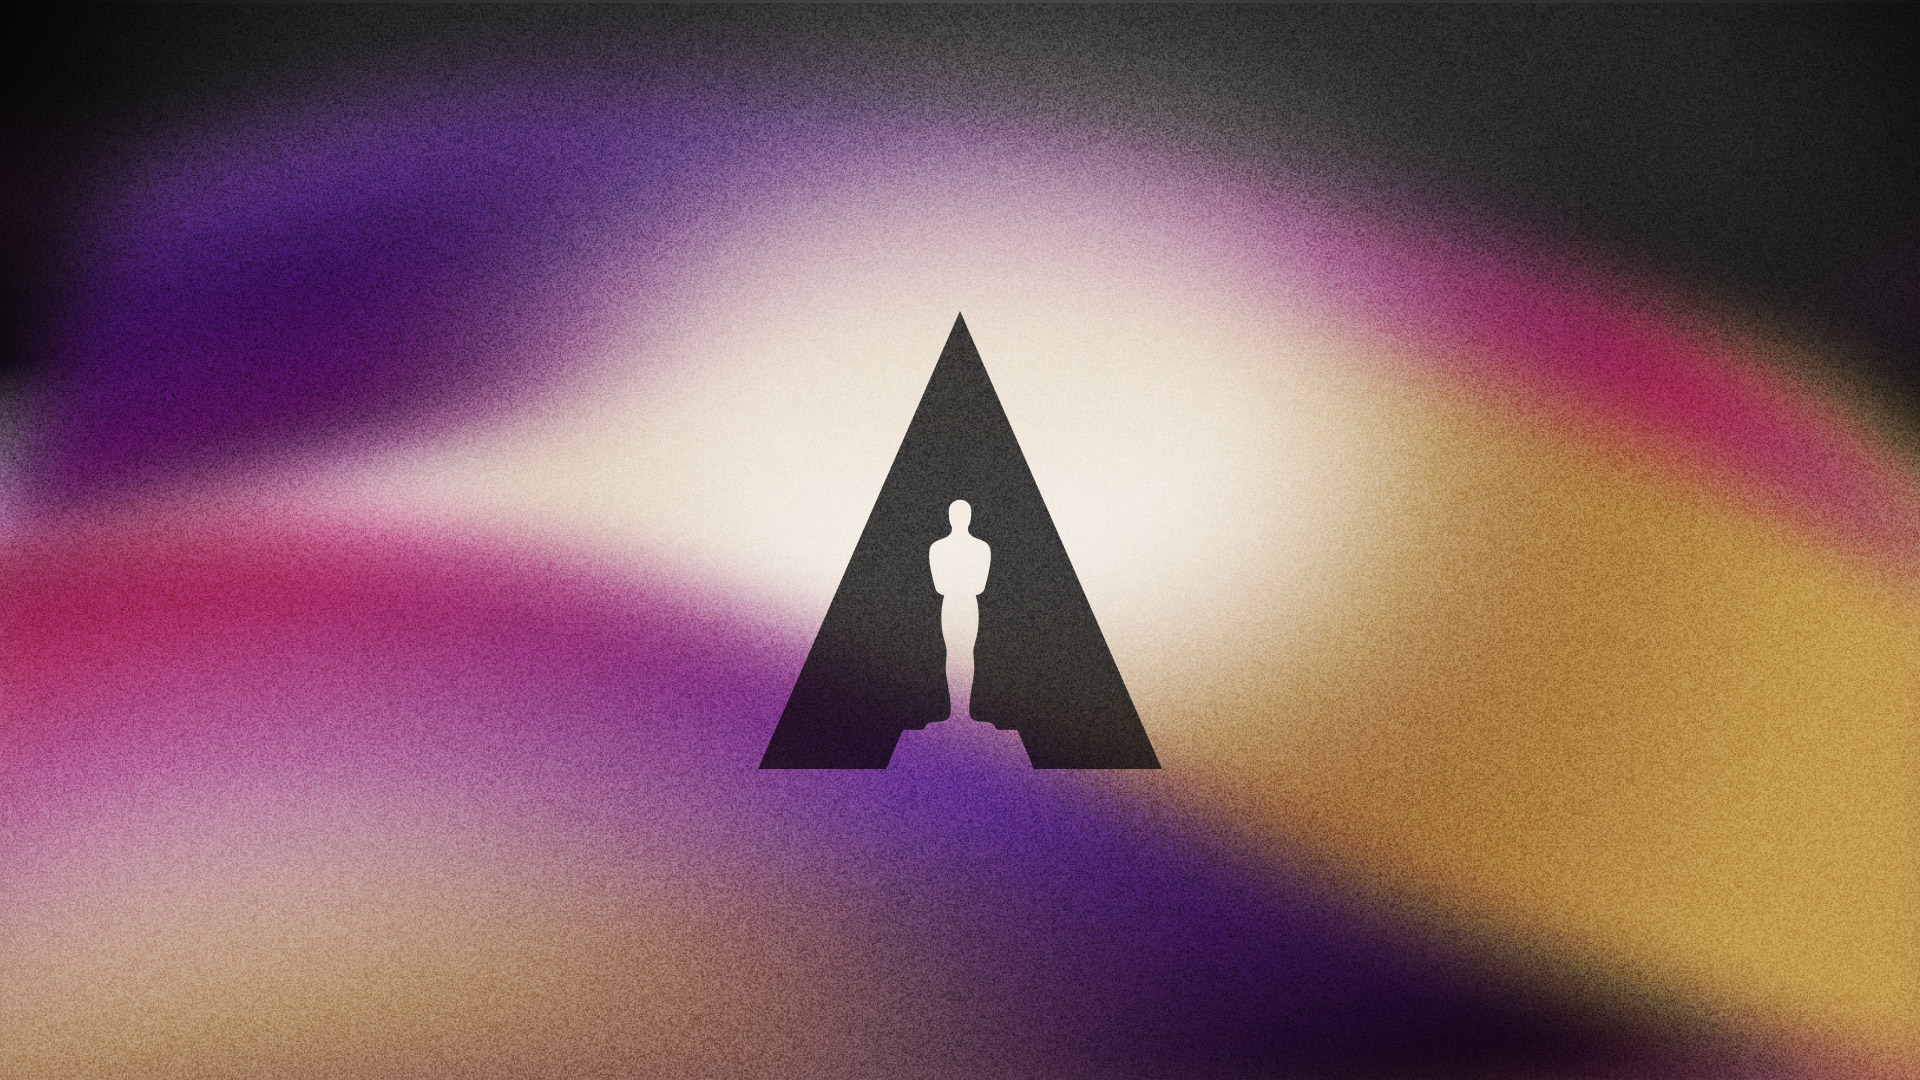 Alumni animated short Black Slide makes Oscars shortlist - Ringling College